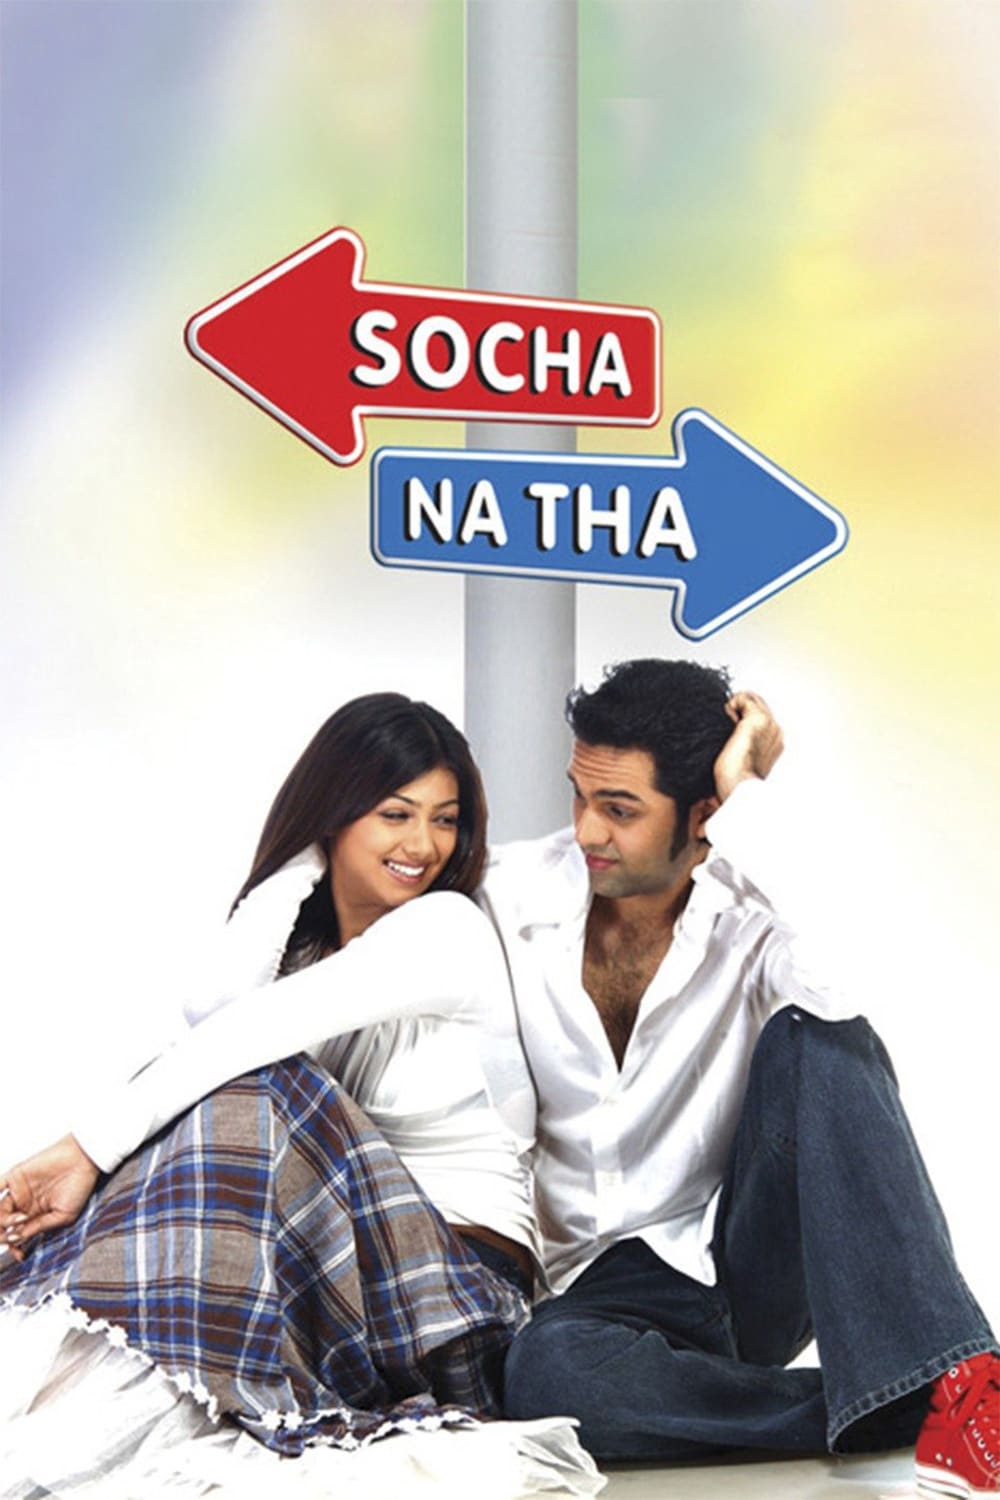 Poster for the movie "Socha Na Tha"